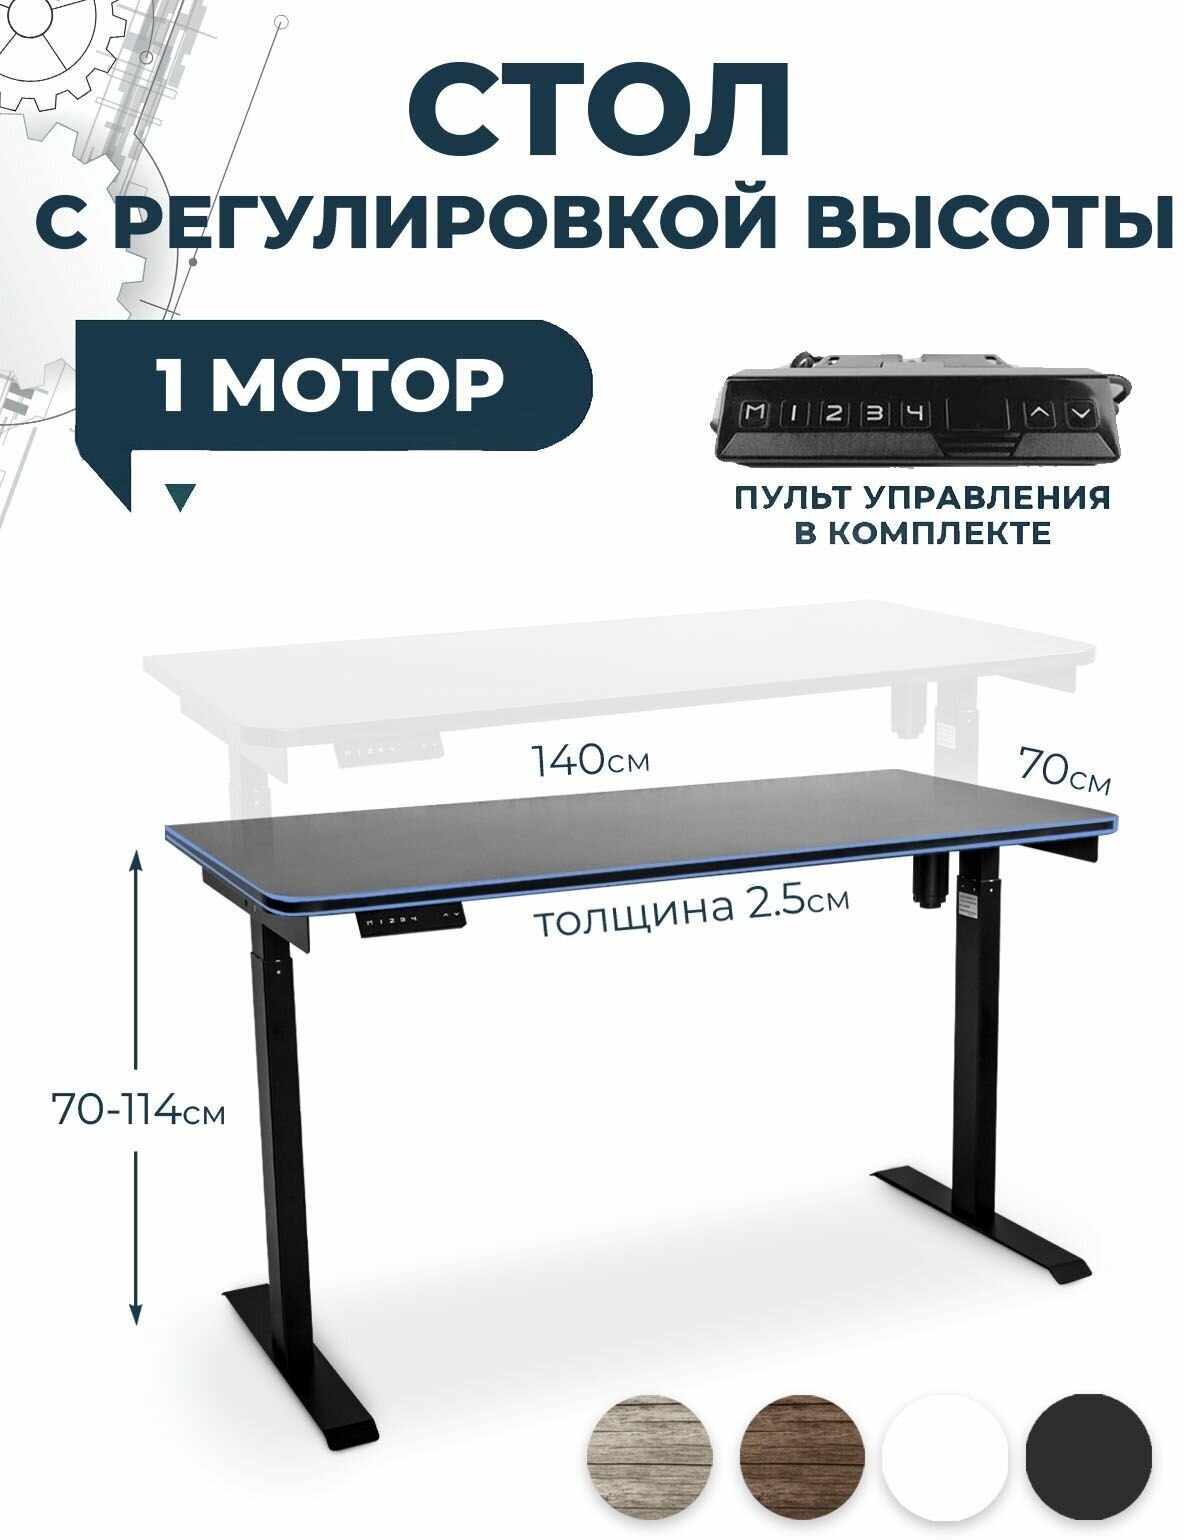 Геймерский игровой стол с электроприводом PROtect, черный, столешница ЛДСП 140x70x2,5 см, модель подстолья Е6